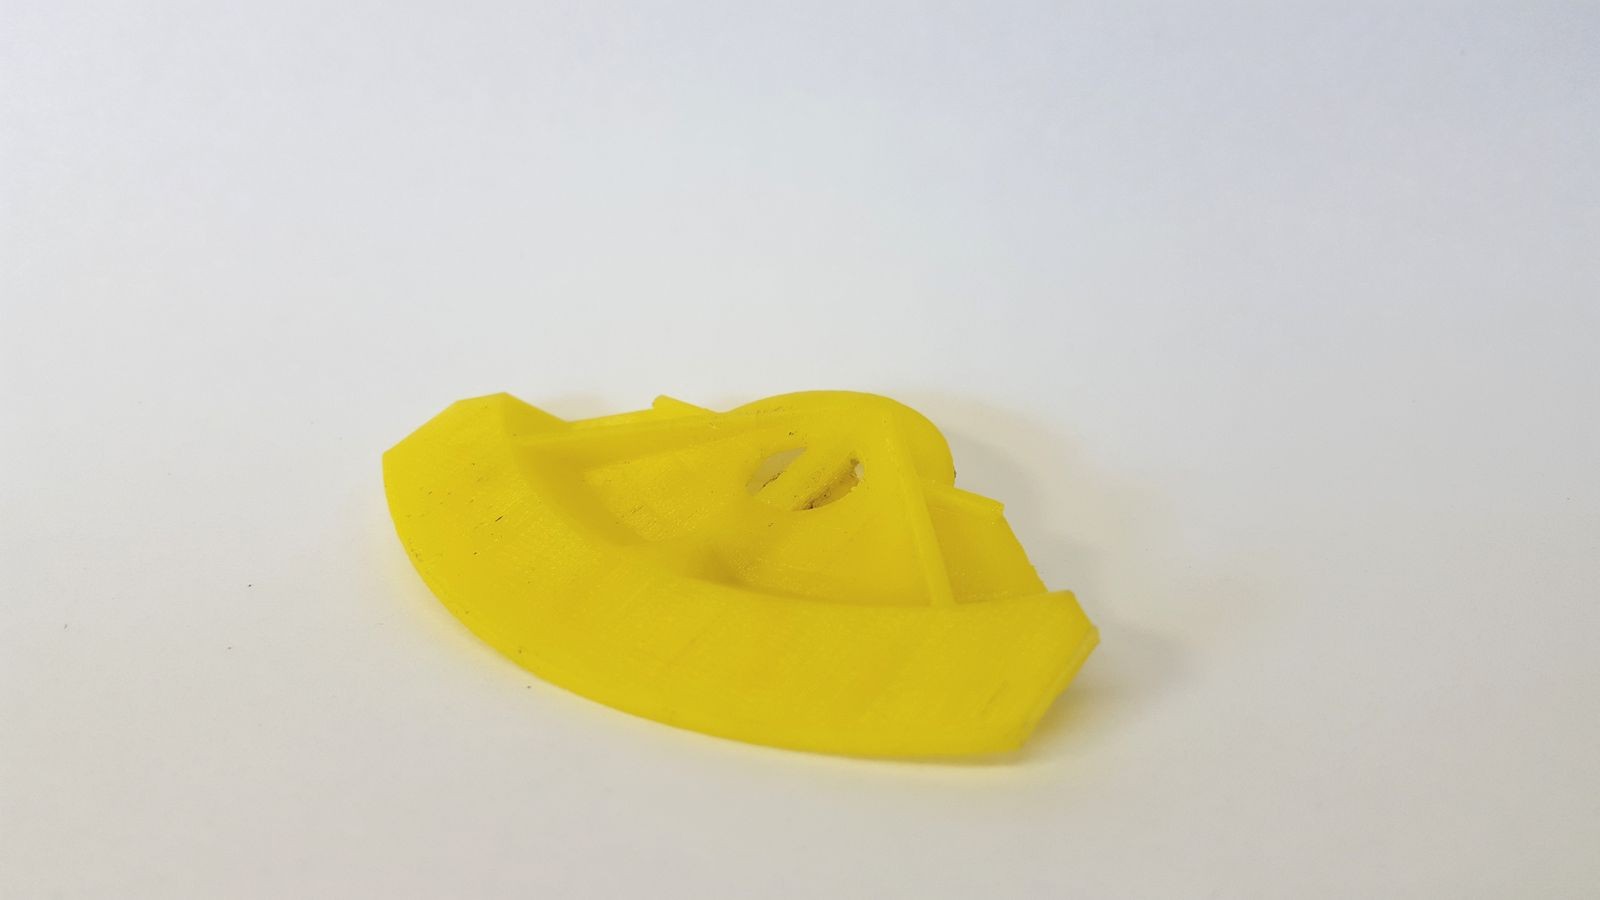 Втулки, крепеж и не только: что можно напечатать для машины на 3D-принтере